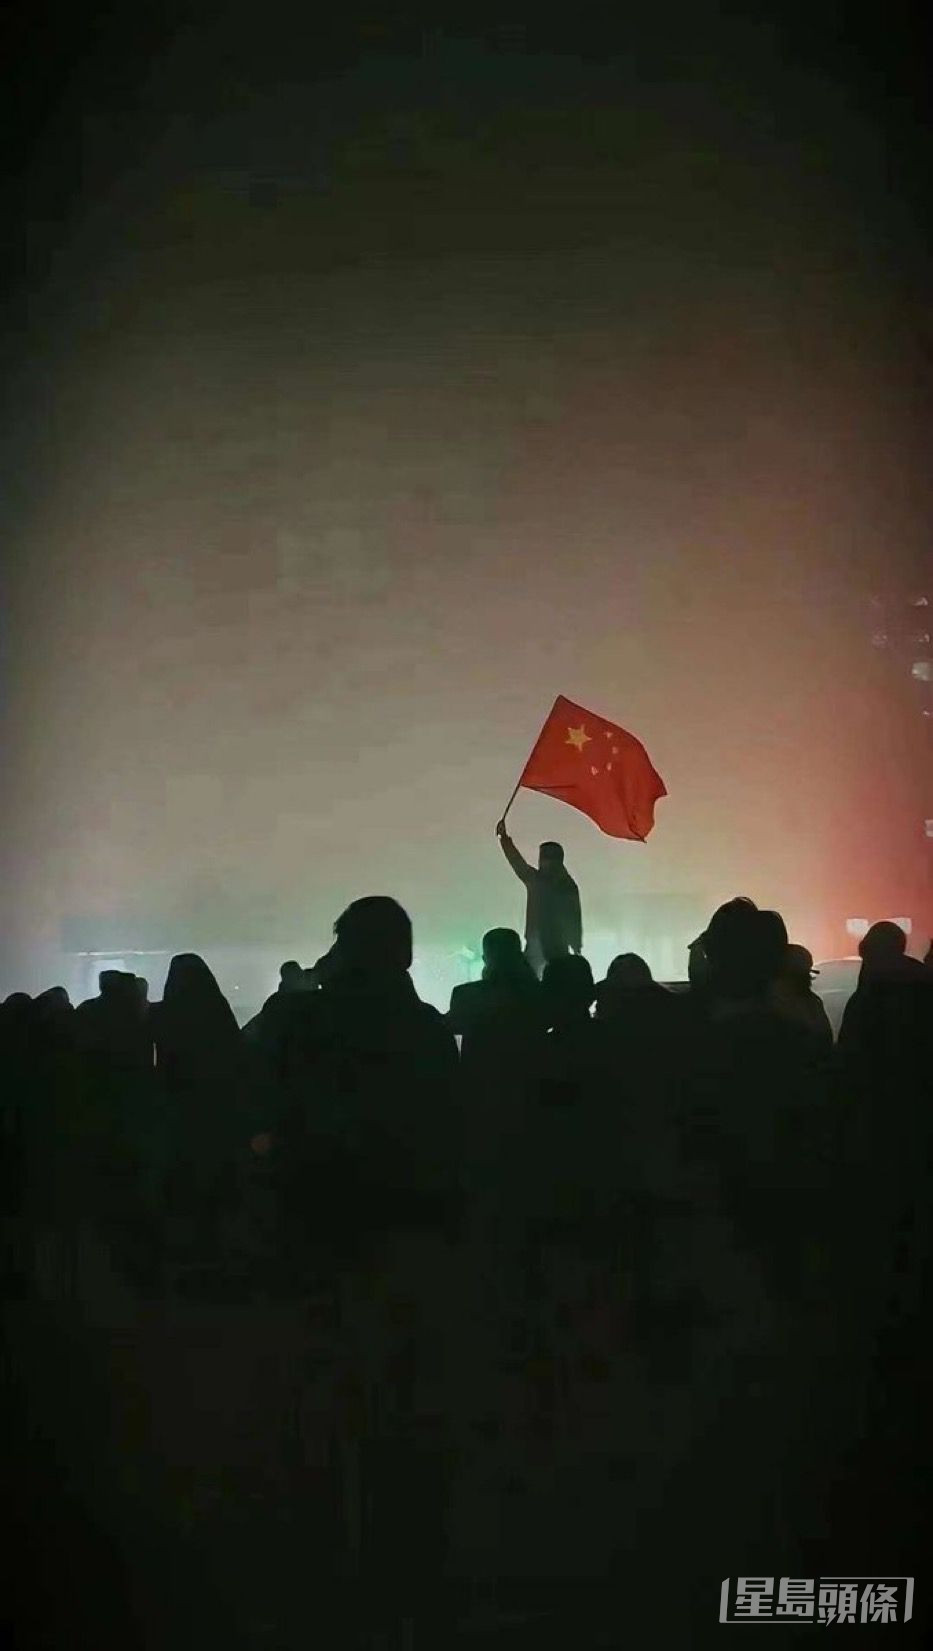 乌鲁木齐有市民深夜举国旗。